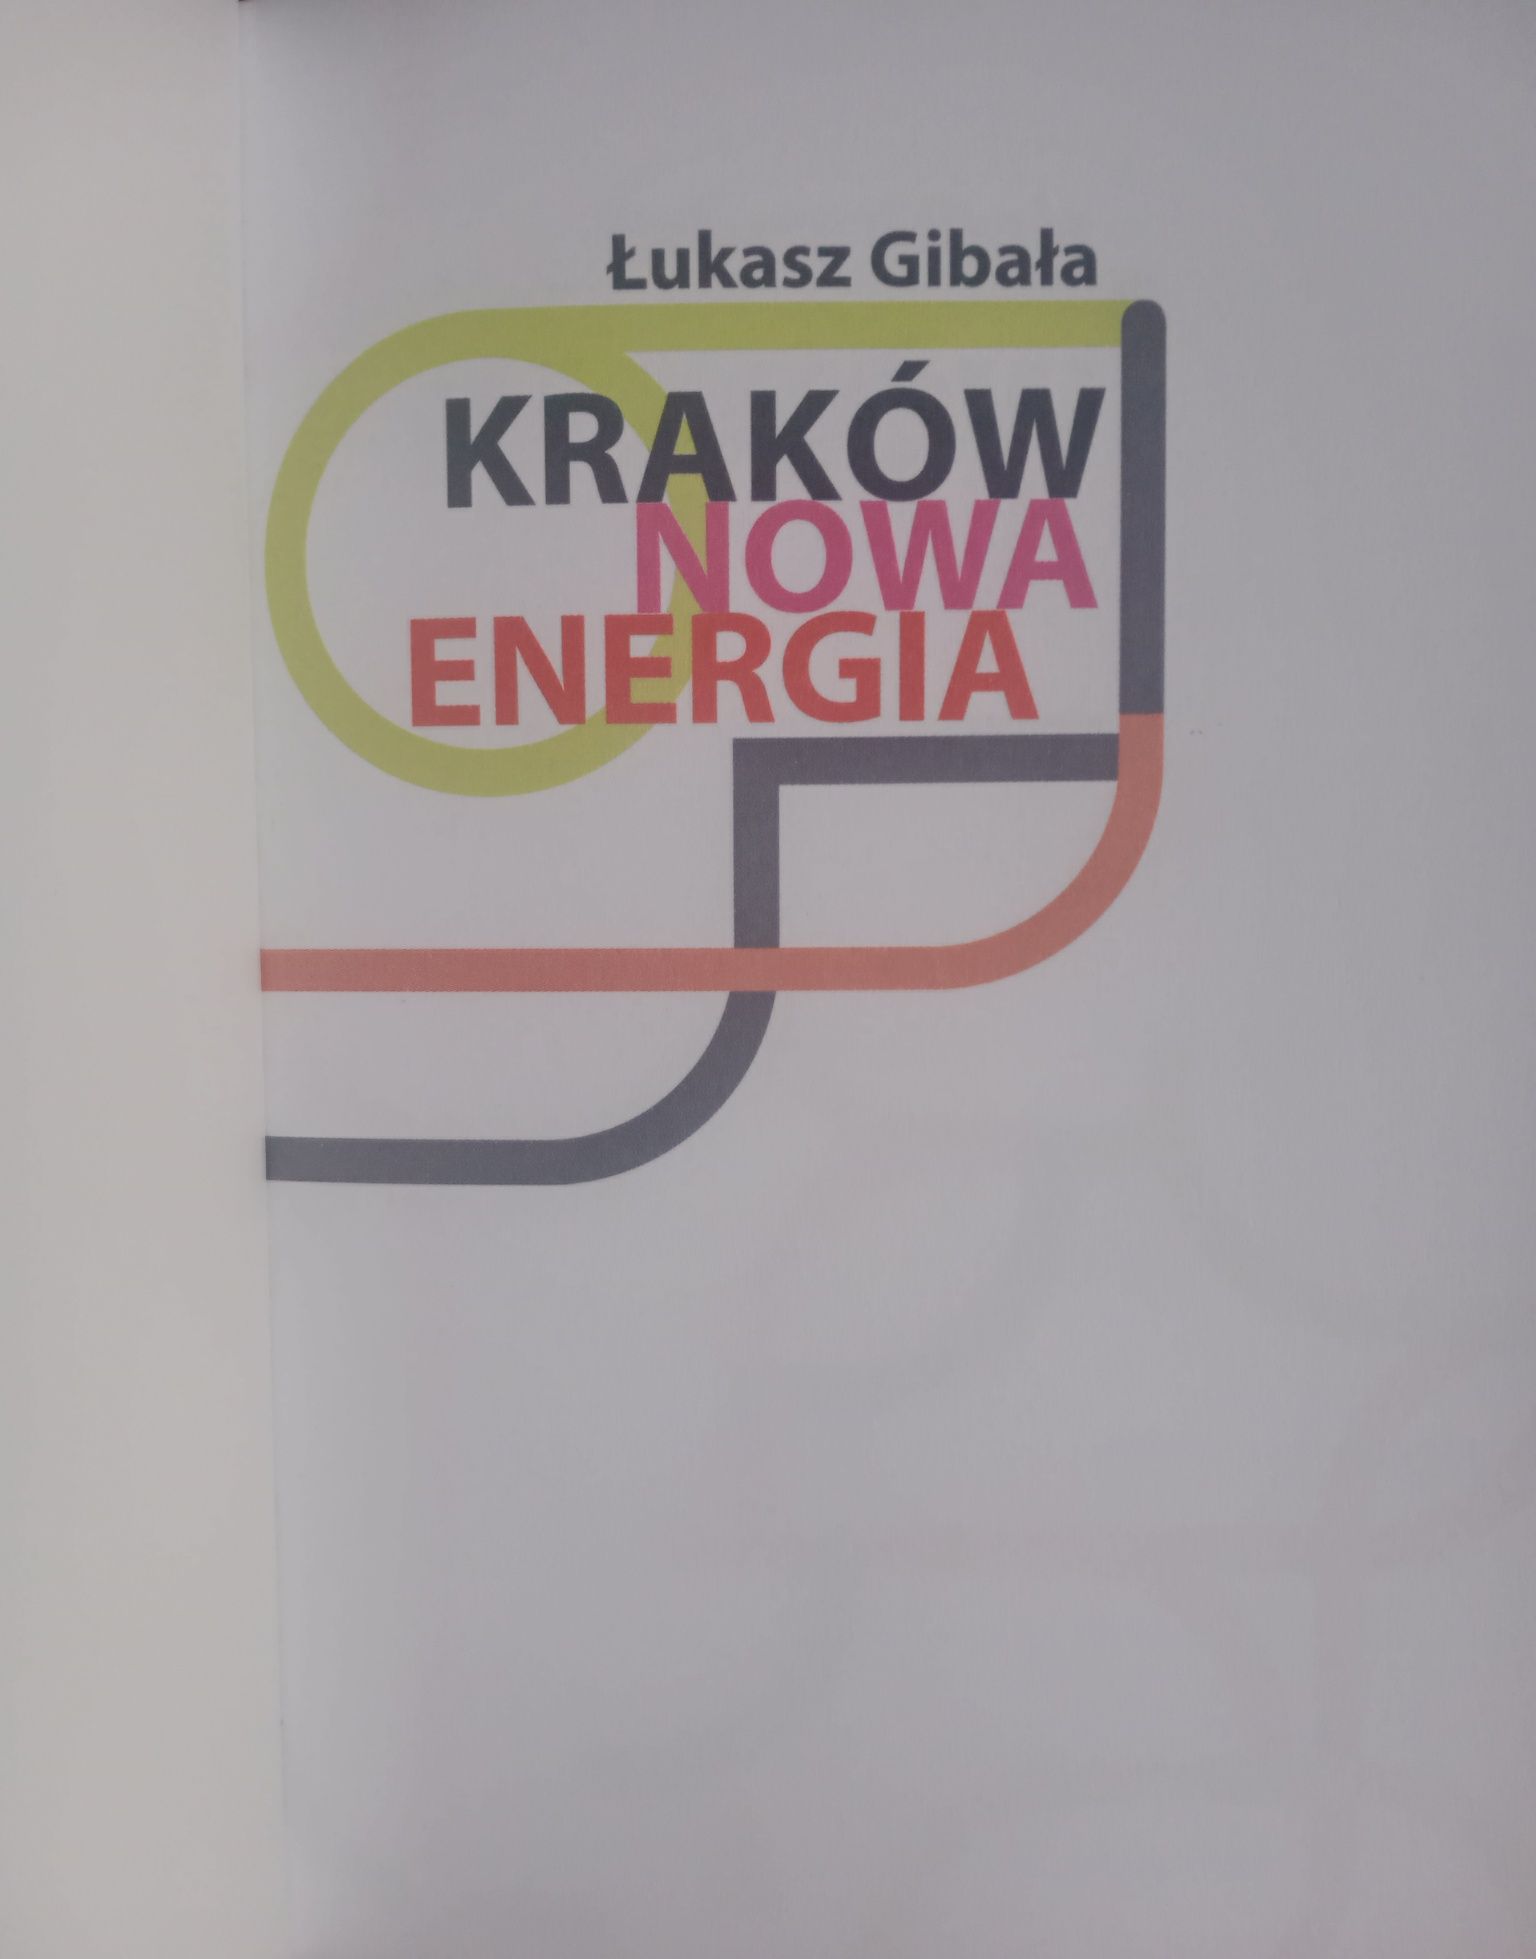 Kraków Nowa Energia Ł.Gibała Wyd.RM